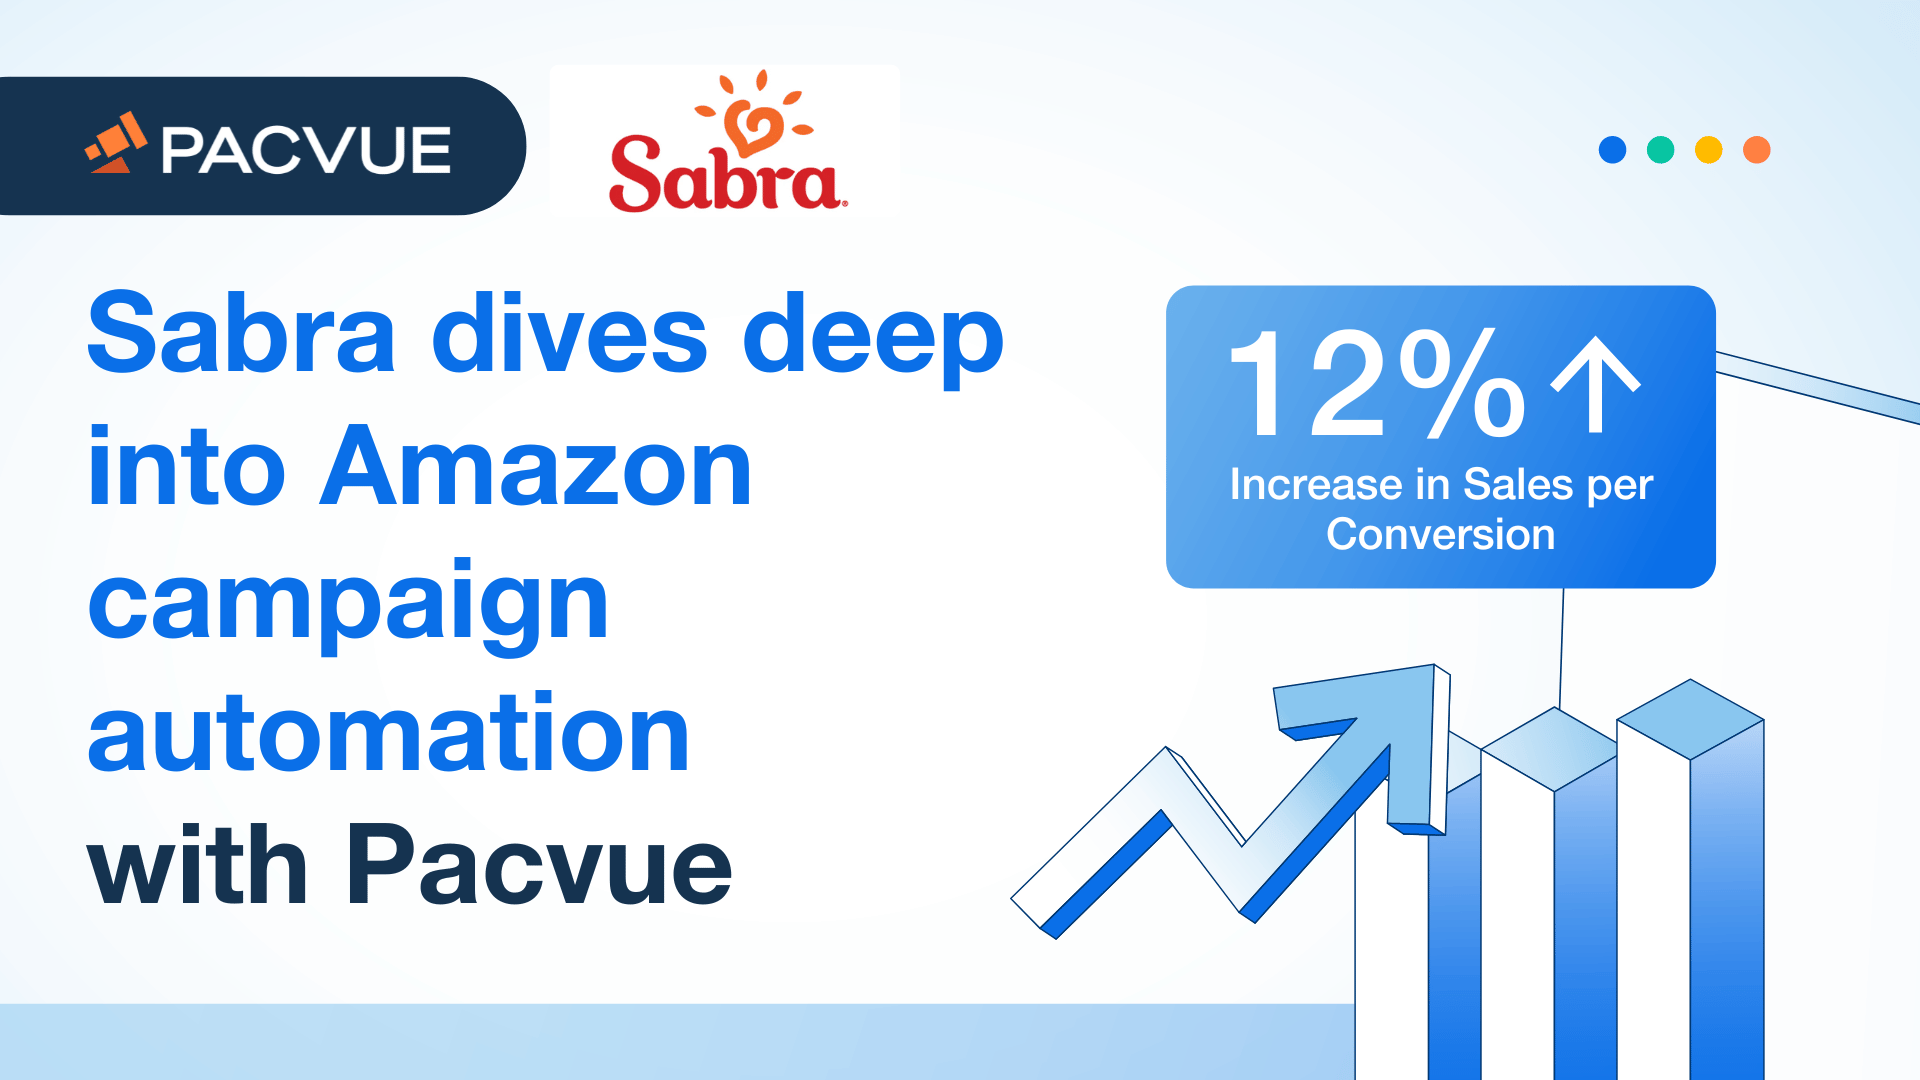 Sabra は、Amazon キャンペーン自動化を深く掘り下げています。Pacvue